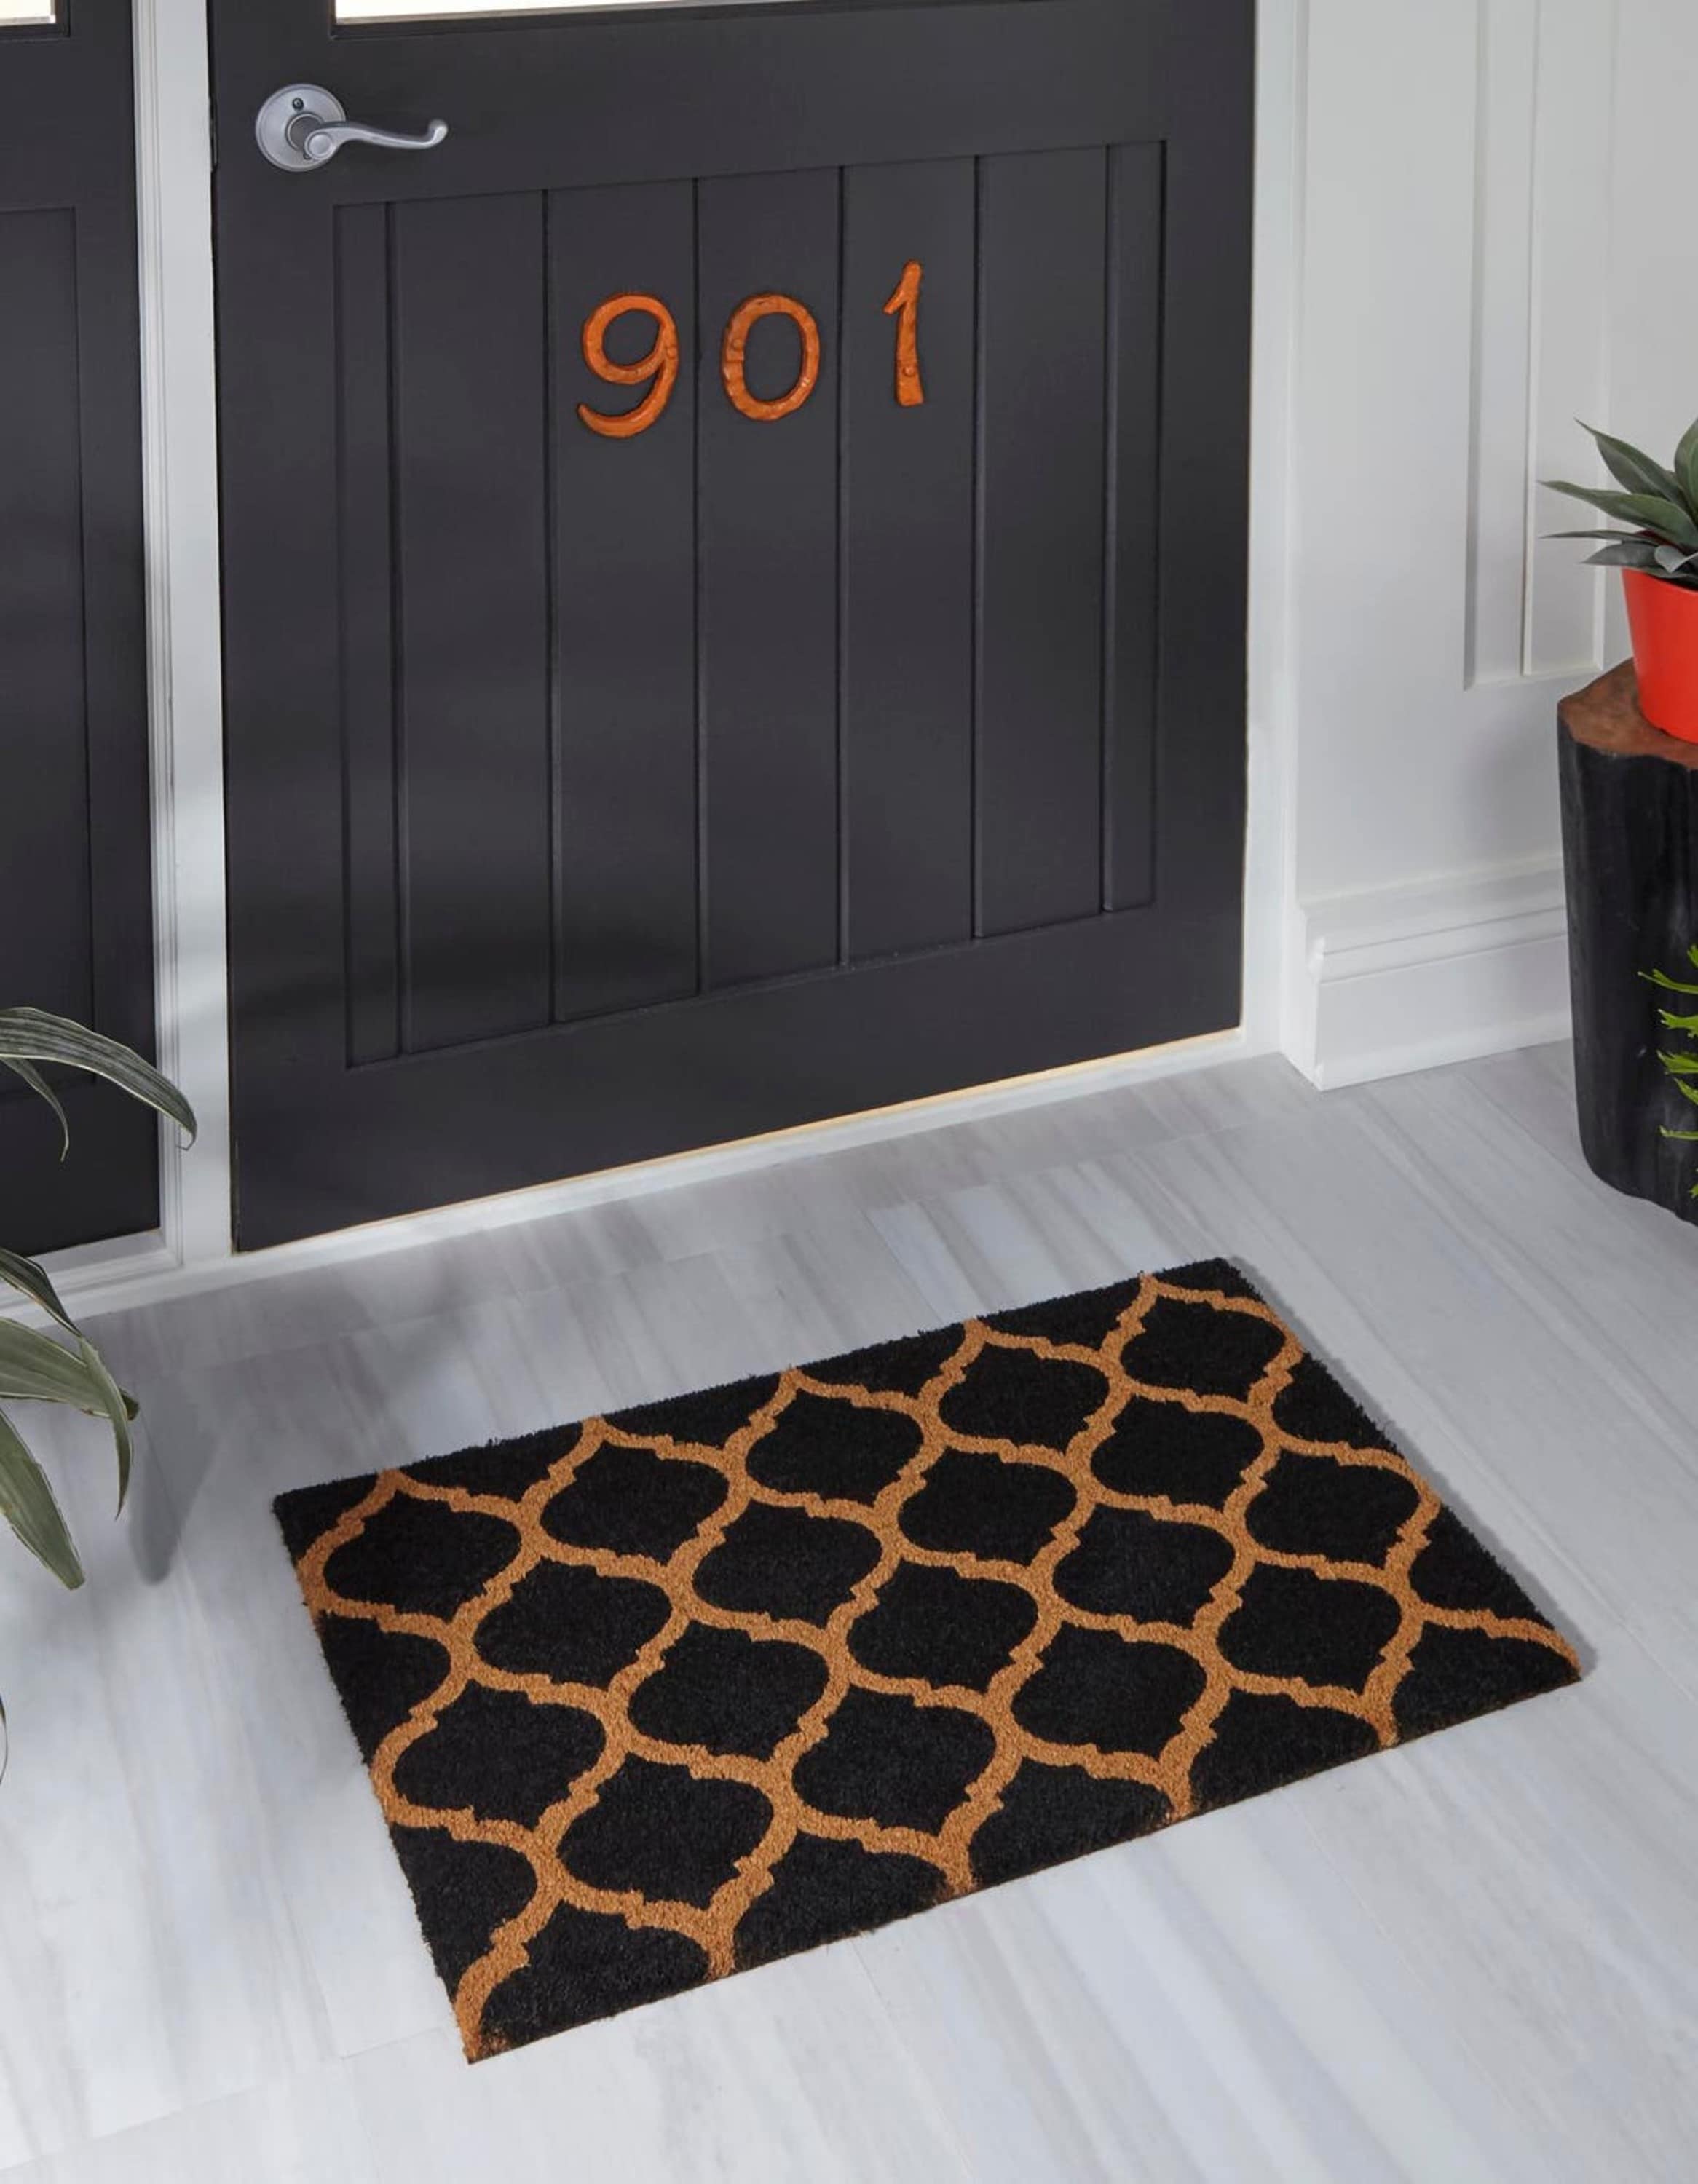 Coconut doormat for indoor & outdoor use